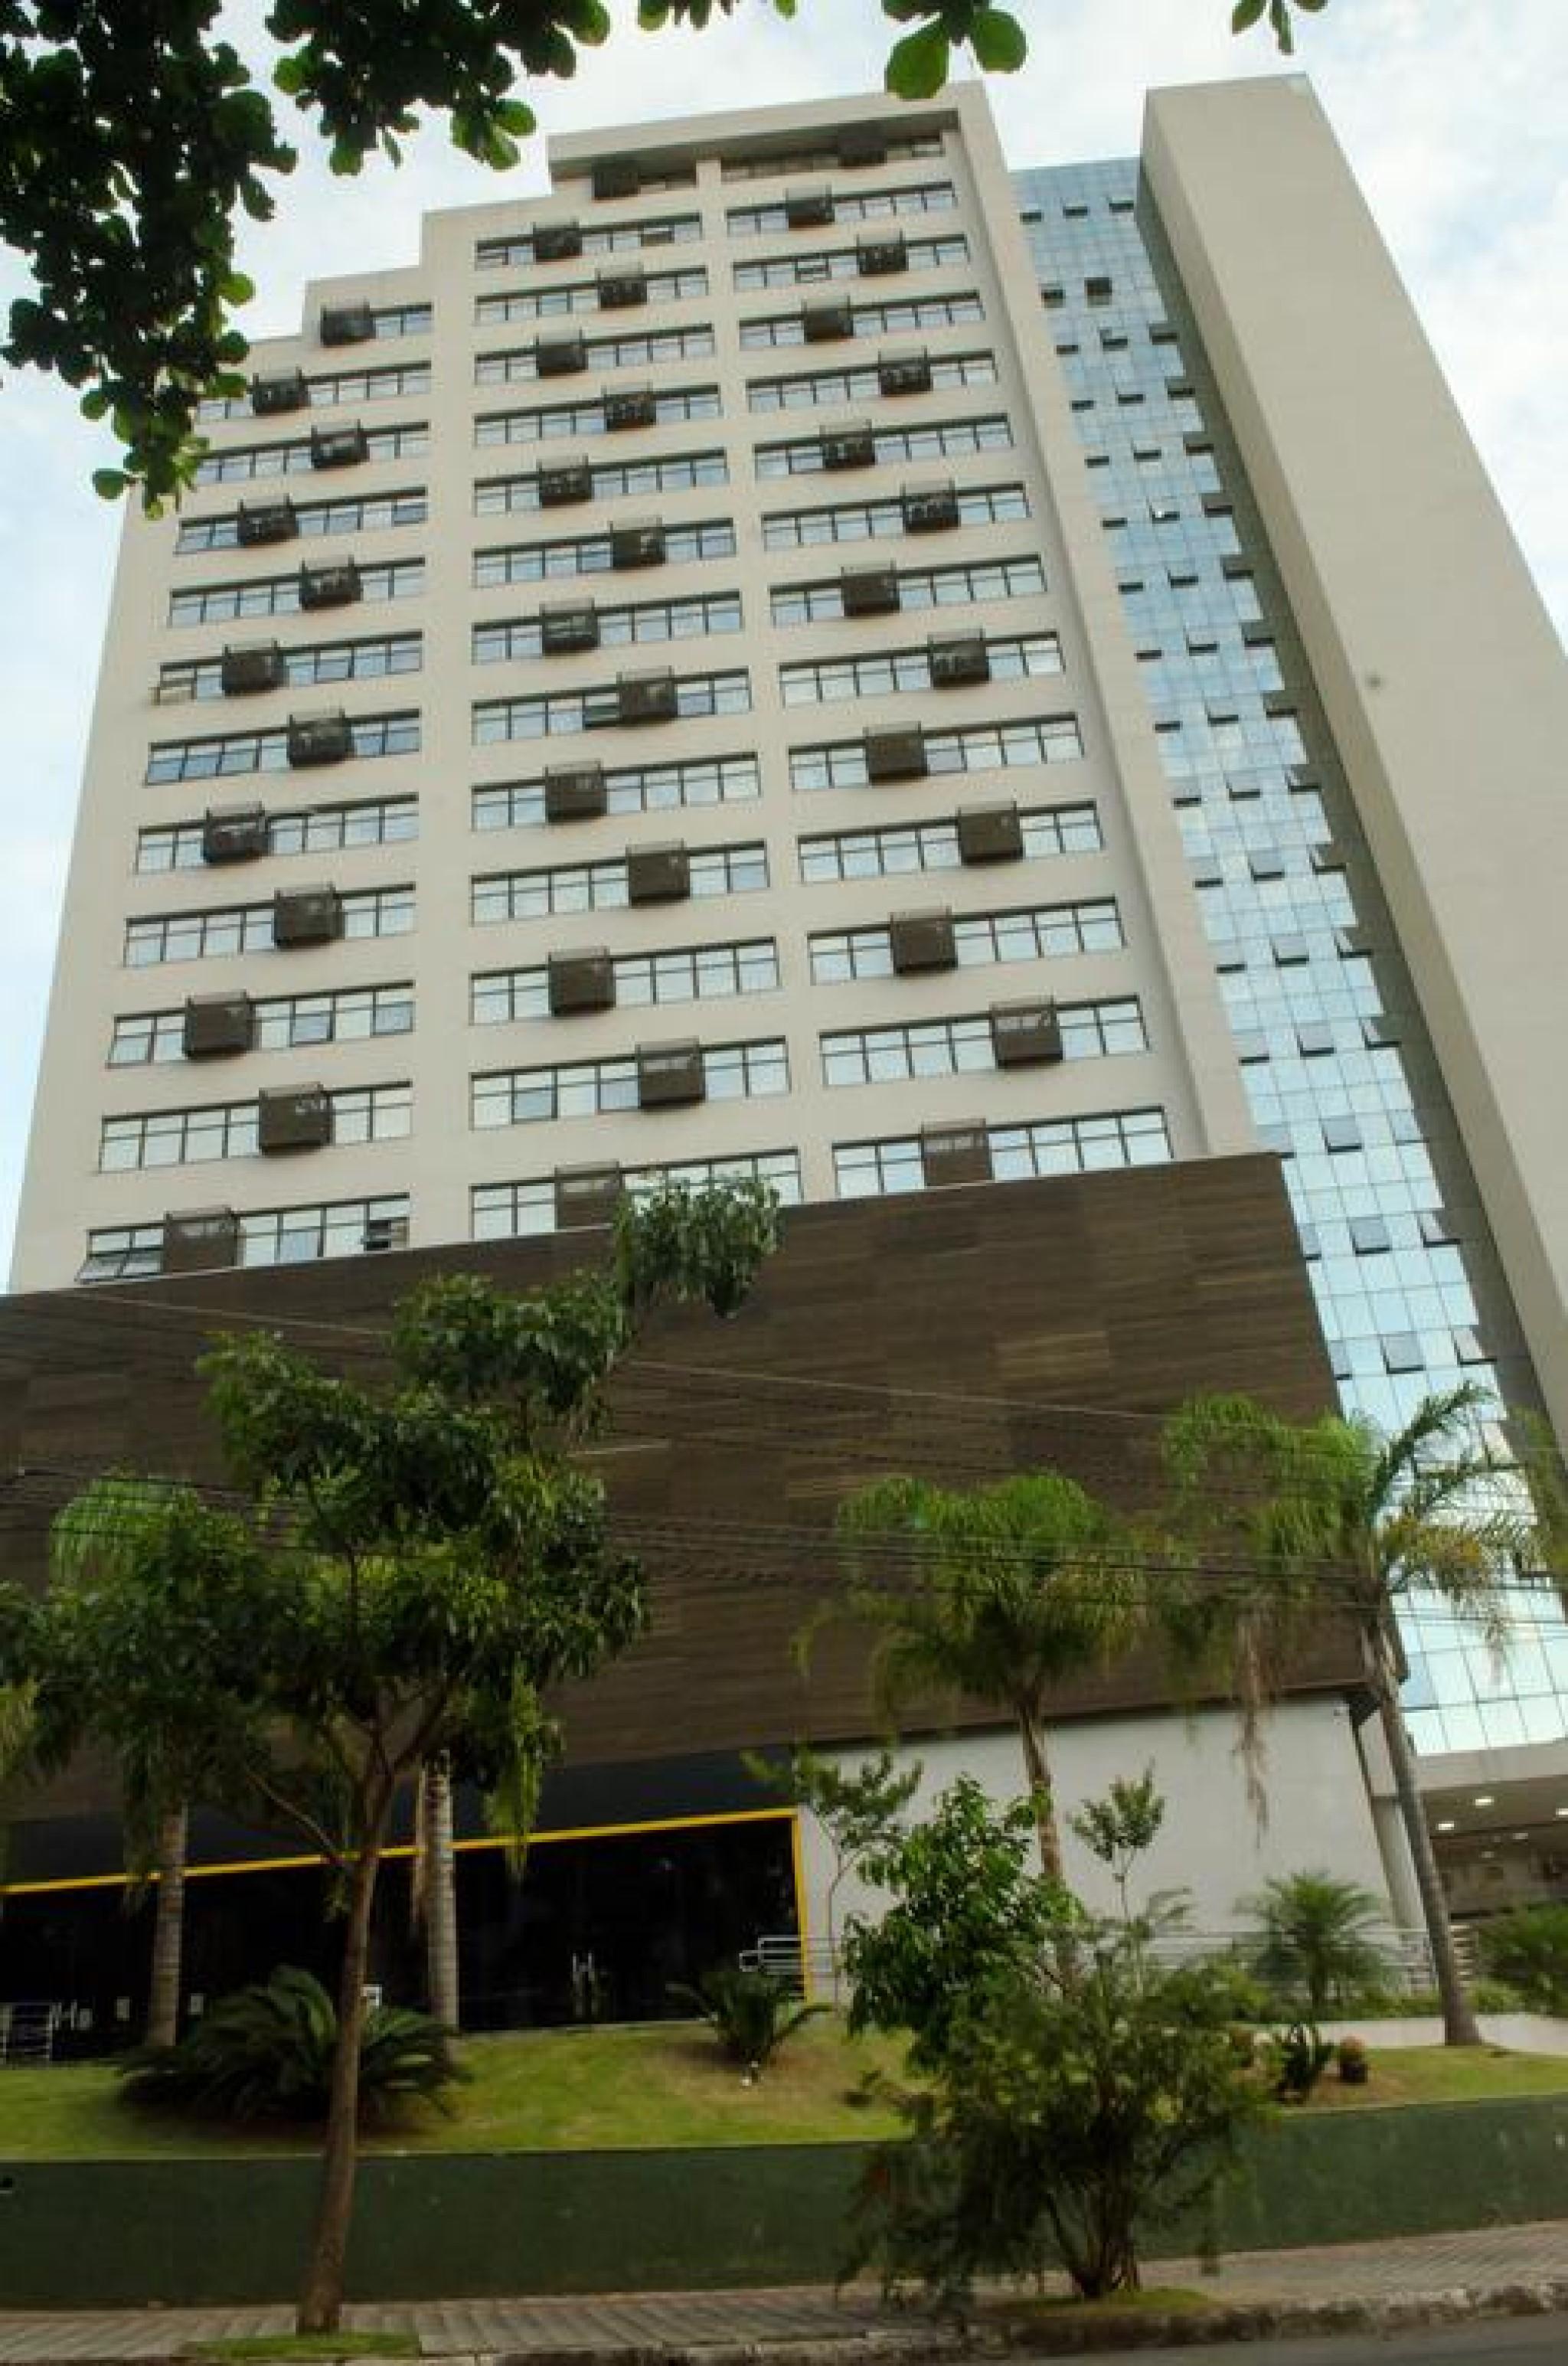 Ville Celestine Condo Hotel E Eventos Belo Horizonte Bagian luar foto